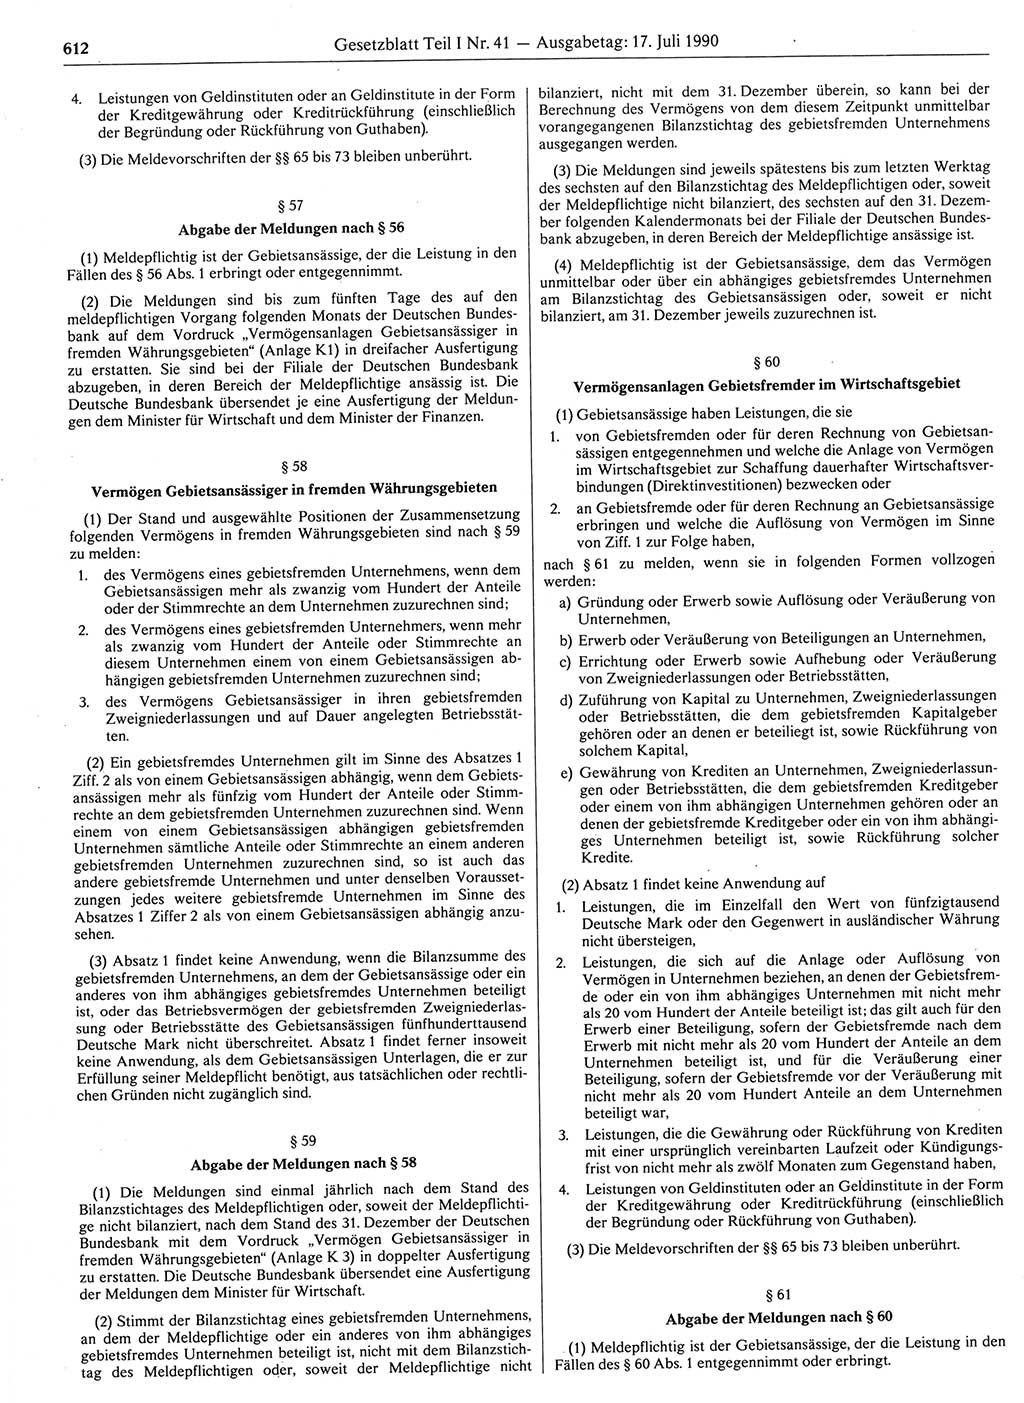 Gesetzblatt (GBl.) der Deutschen Demokratischen Republik (DDR) Teil Ⅰ 1990, Seite 612 (GBl. DDR Ⅰ 1990, S. 612)